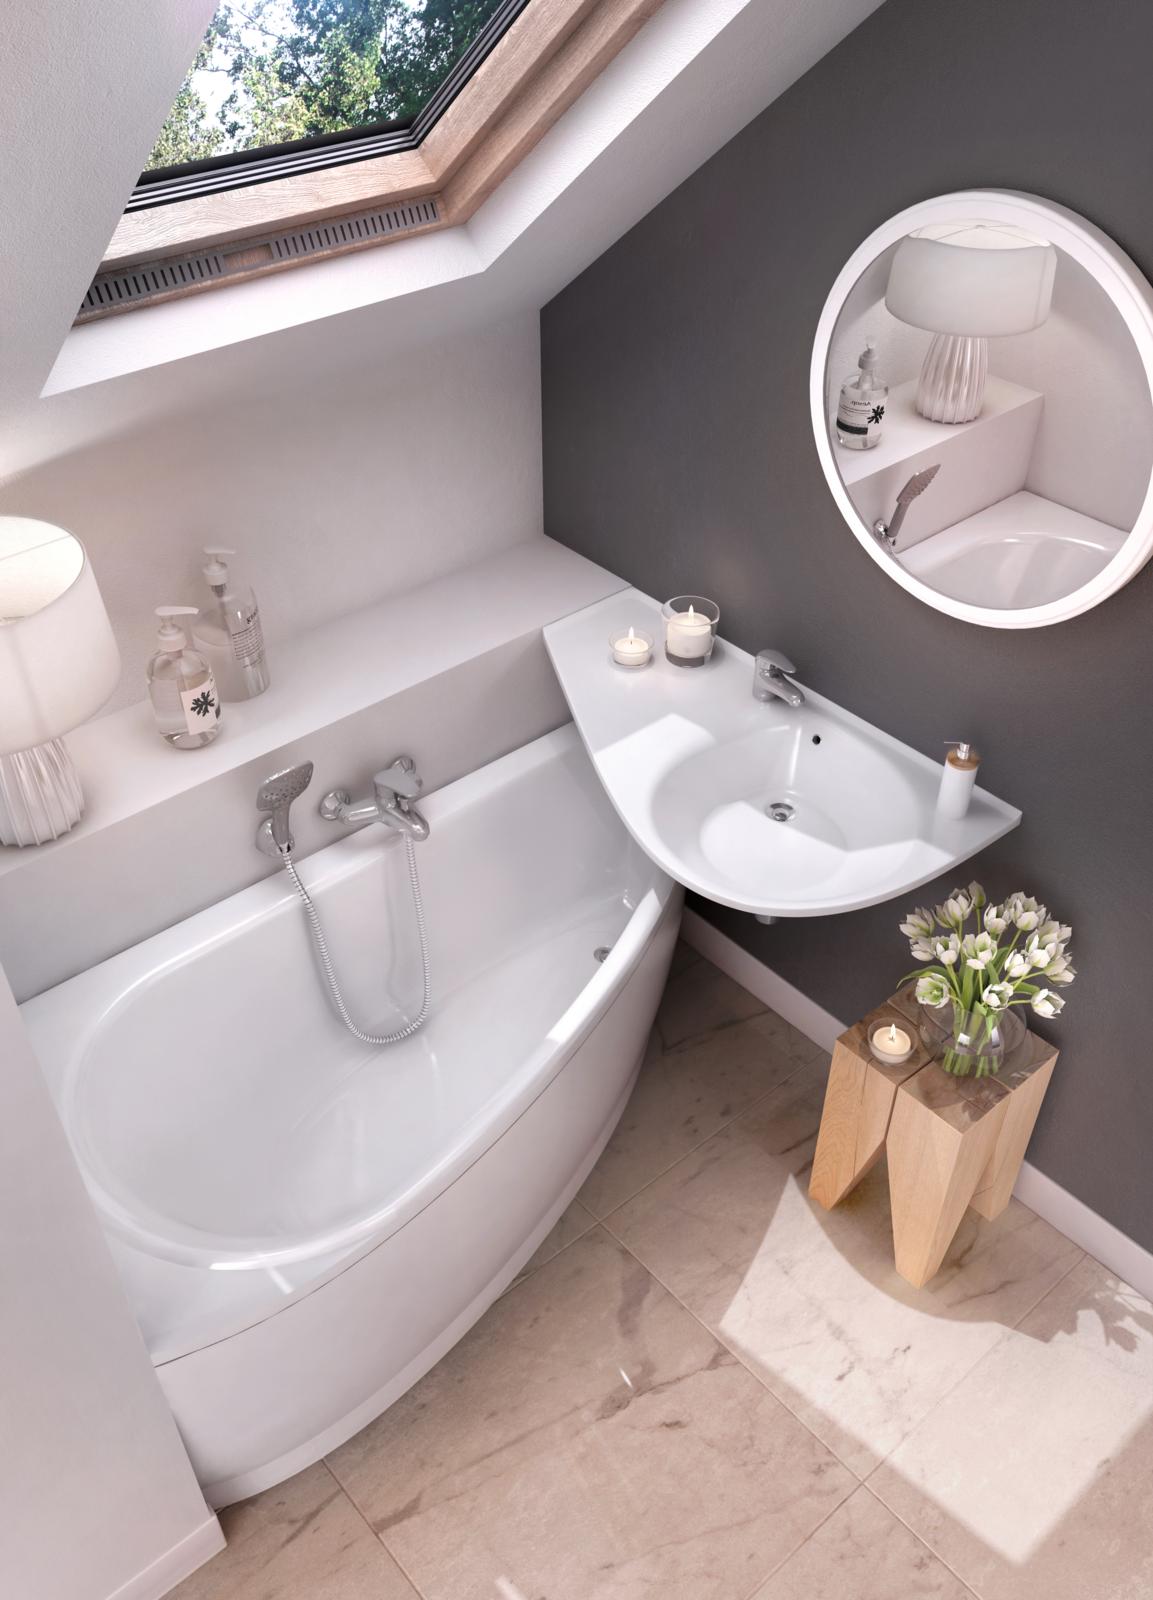 Az Avocado fürdőszoba koncepció szaniterei (kád, mosdókagyló) a legkisebb fürdőszobákban is megállják a helyüket!